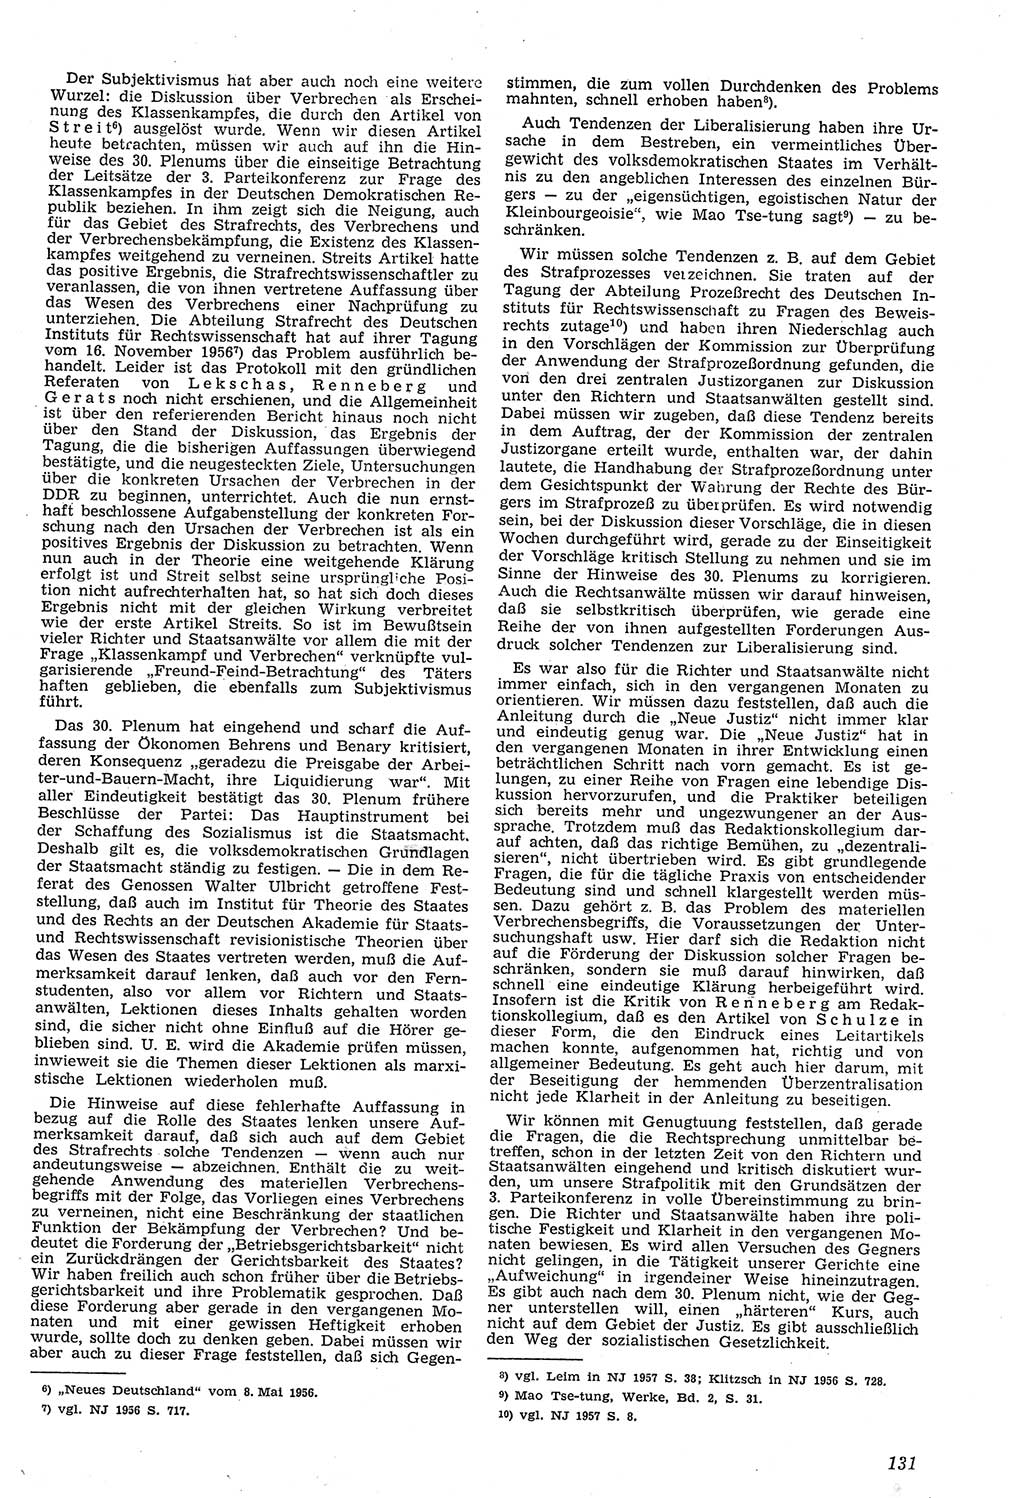 Neue Justiz (NJ), Zeitschrift für Recht und Rechtswissenschaft [Deutsche Demokratische Republik (DDR)], 11. Jahrgang 1957, Seite 131 (NJ DDR 1957, S. 131)